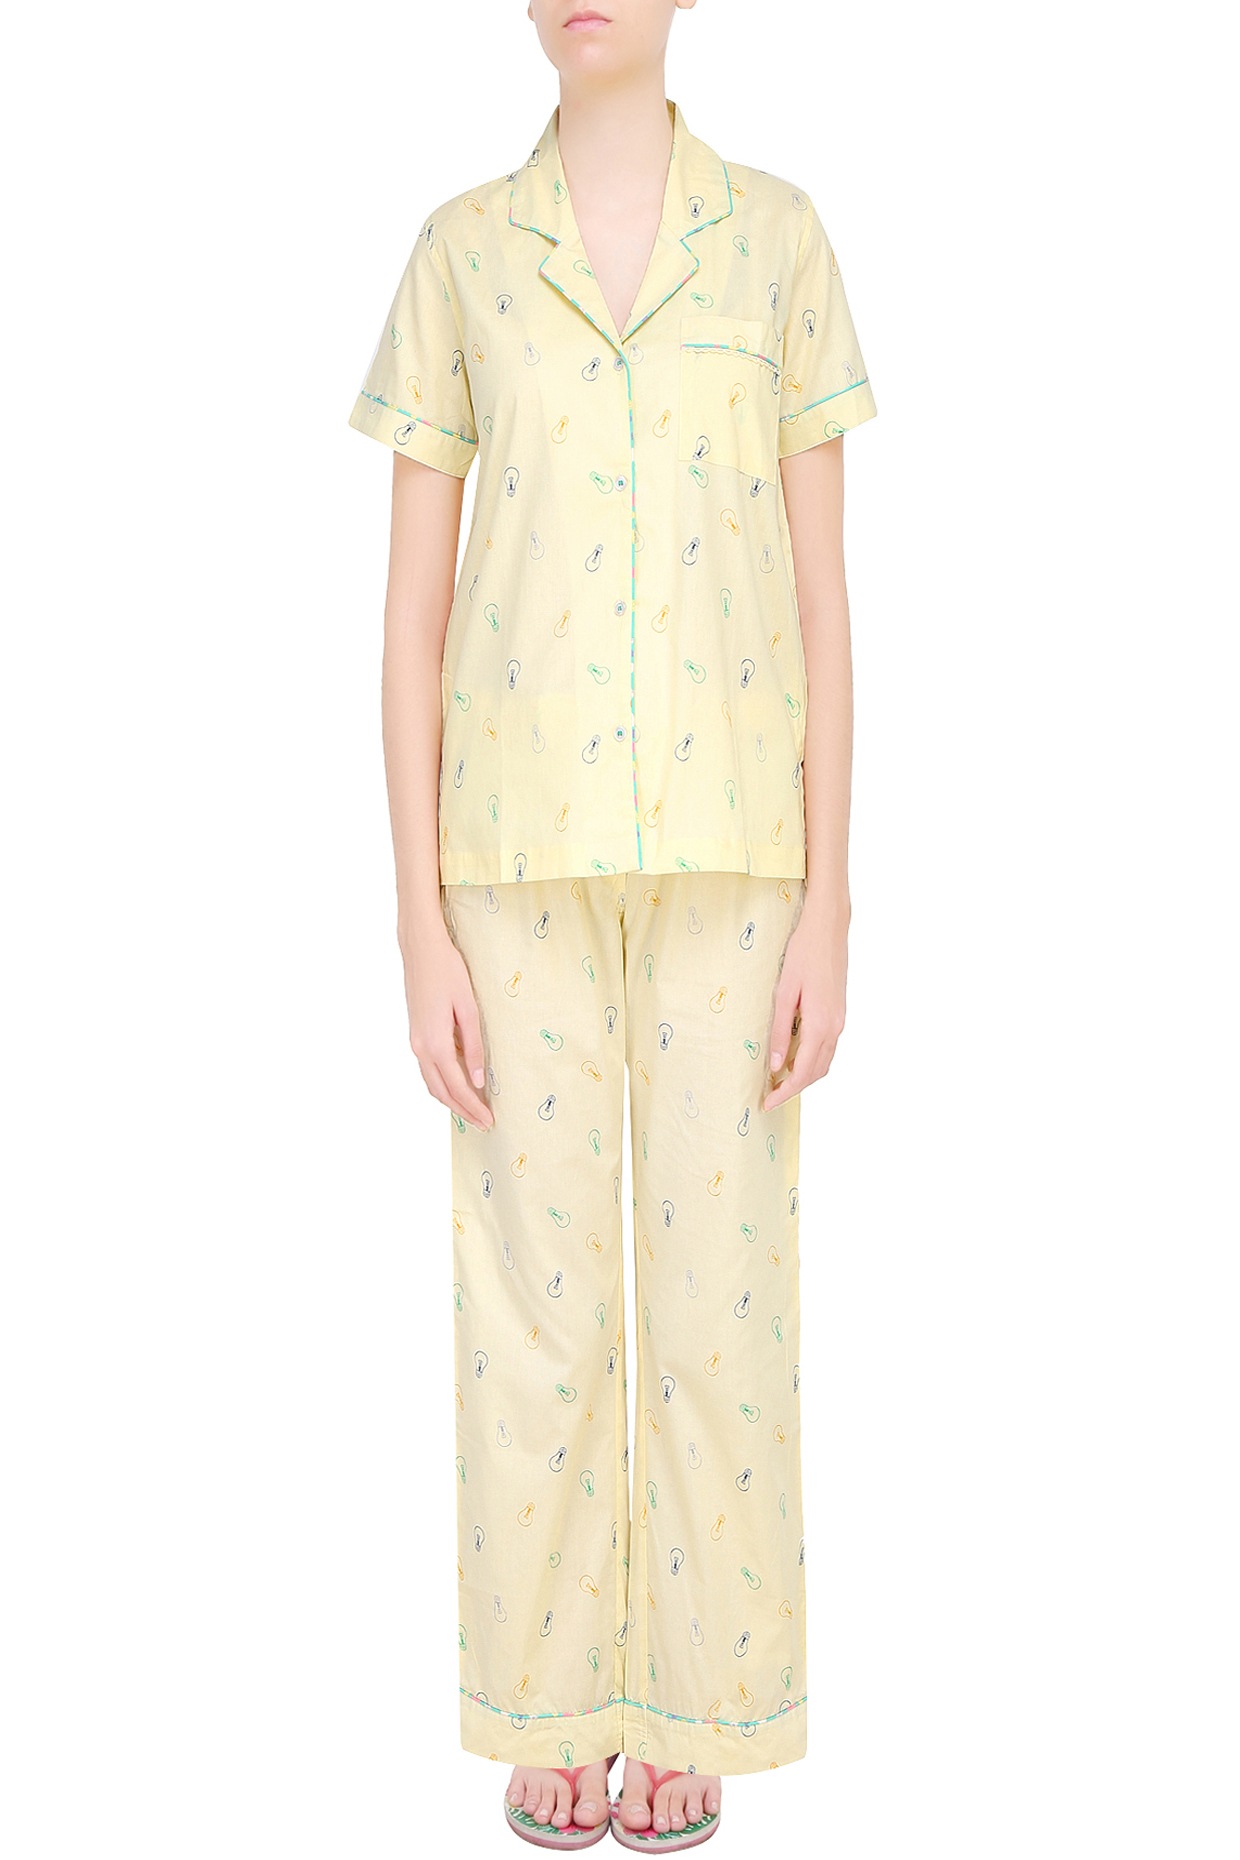 Girls Nightwear, Pajamas, and Night Dresses | PajamaTribe – Pajama Tribe